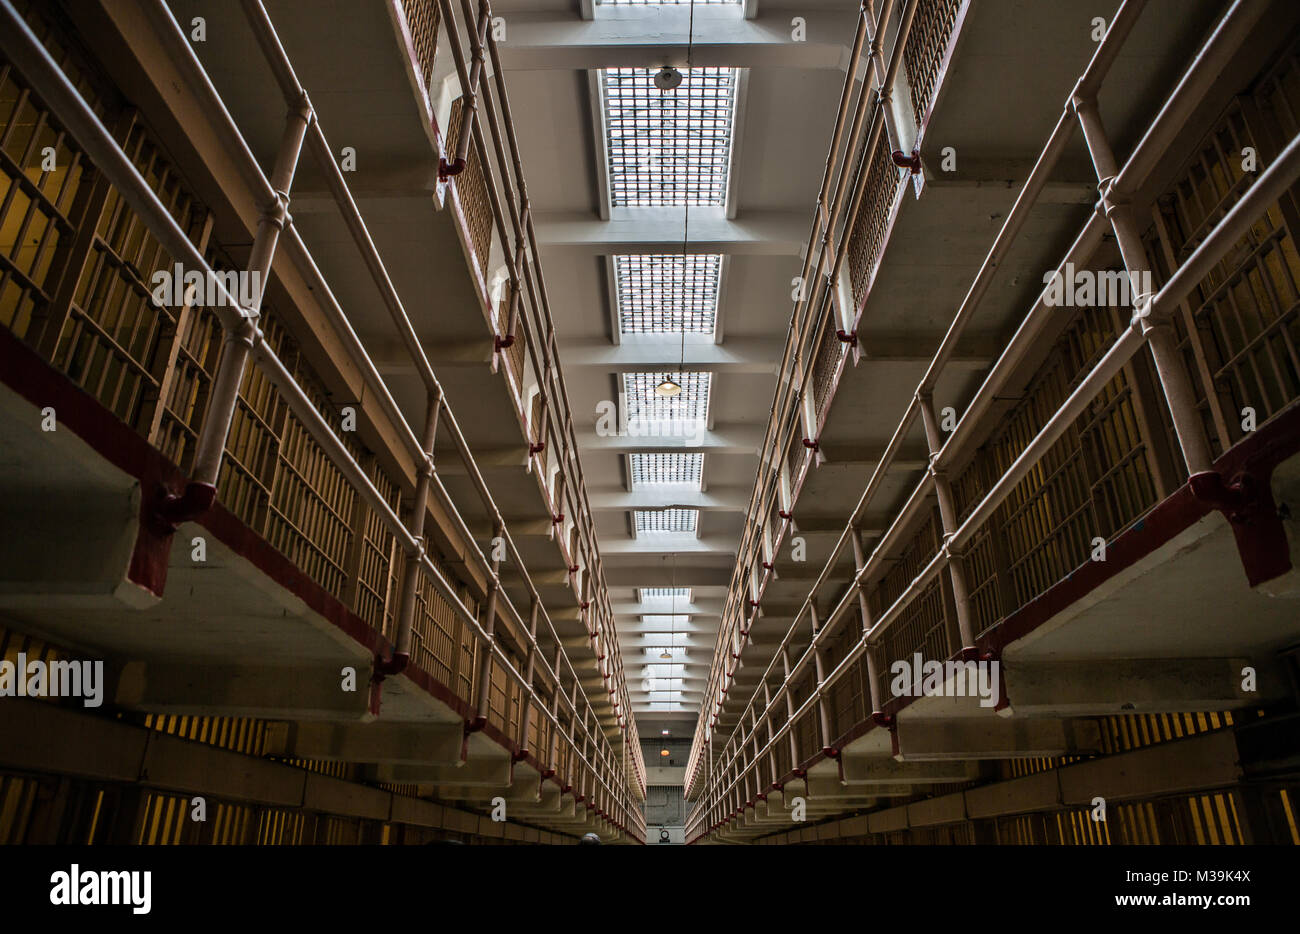 ALCATRAZ, Etats-Unis - 10 JUIN 2015 : couloir de la prison à l'intérieur du pénitencier d'Alcatraz, avec la rangée de chambres Banque D'Images